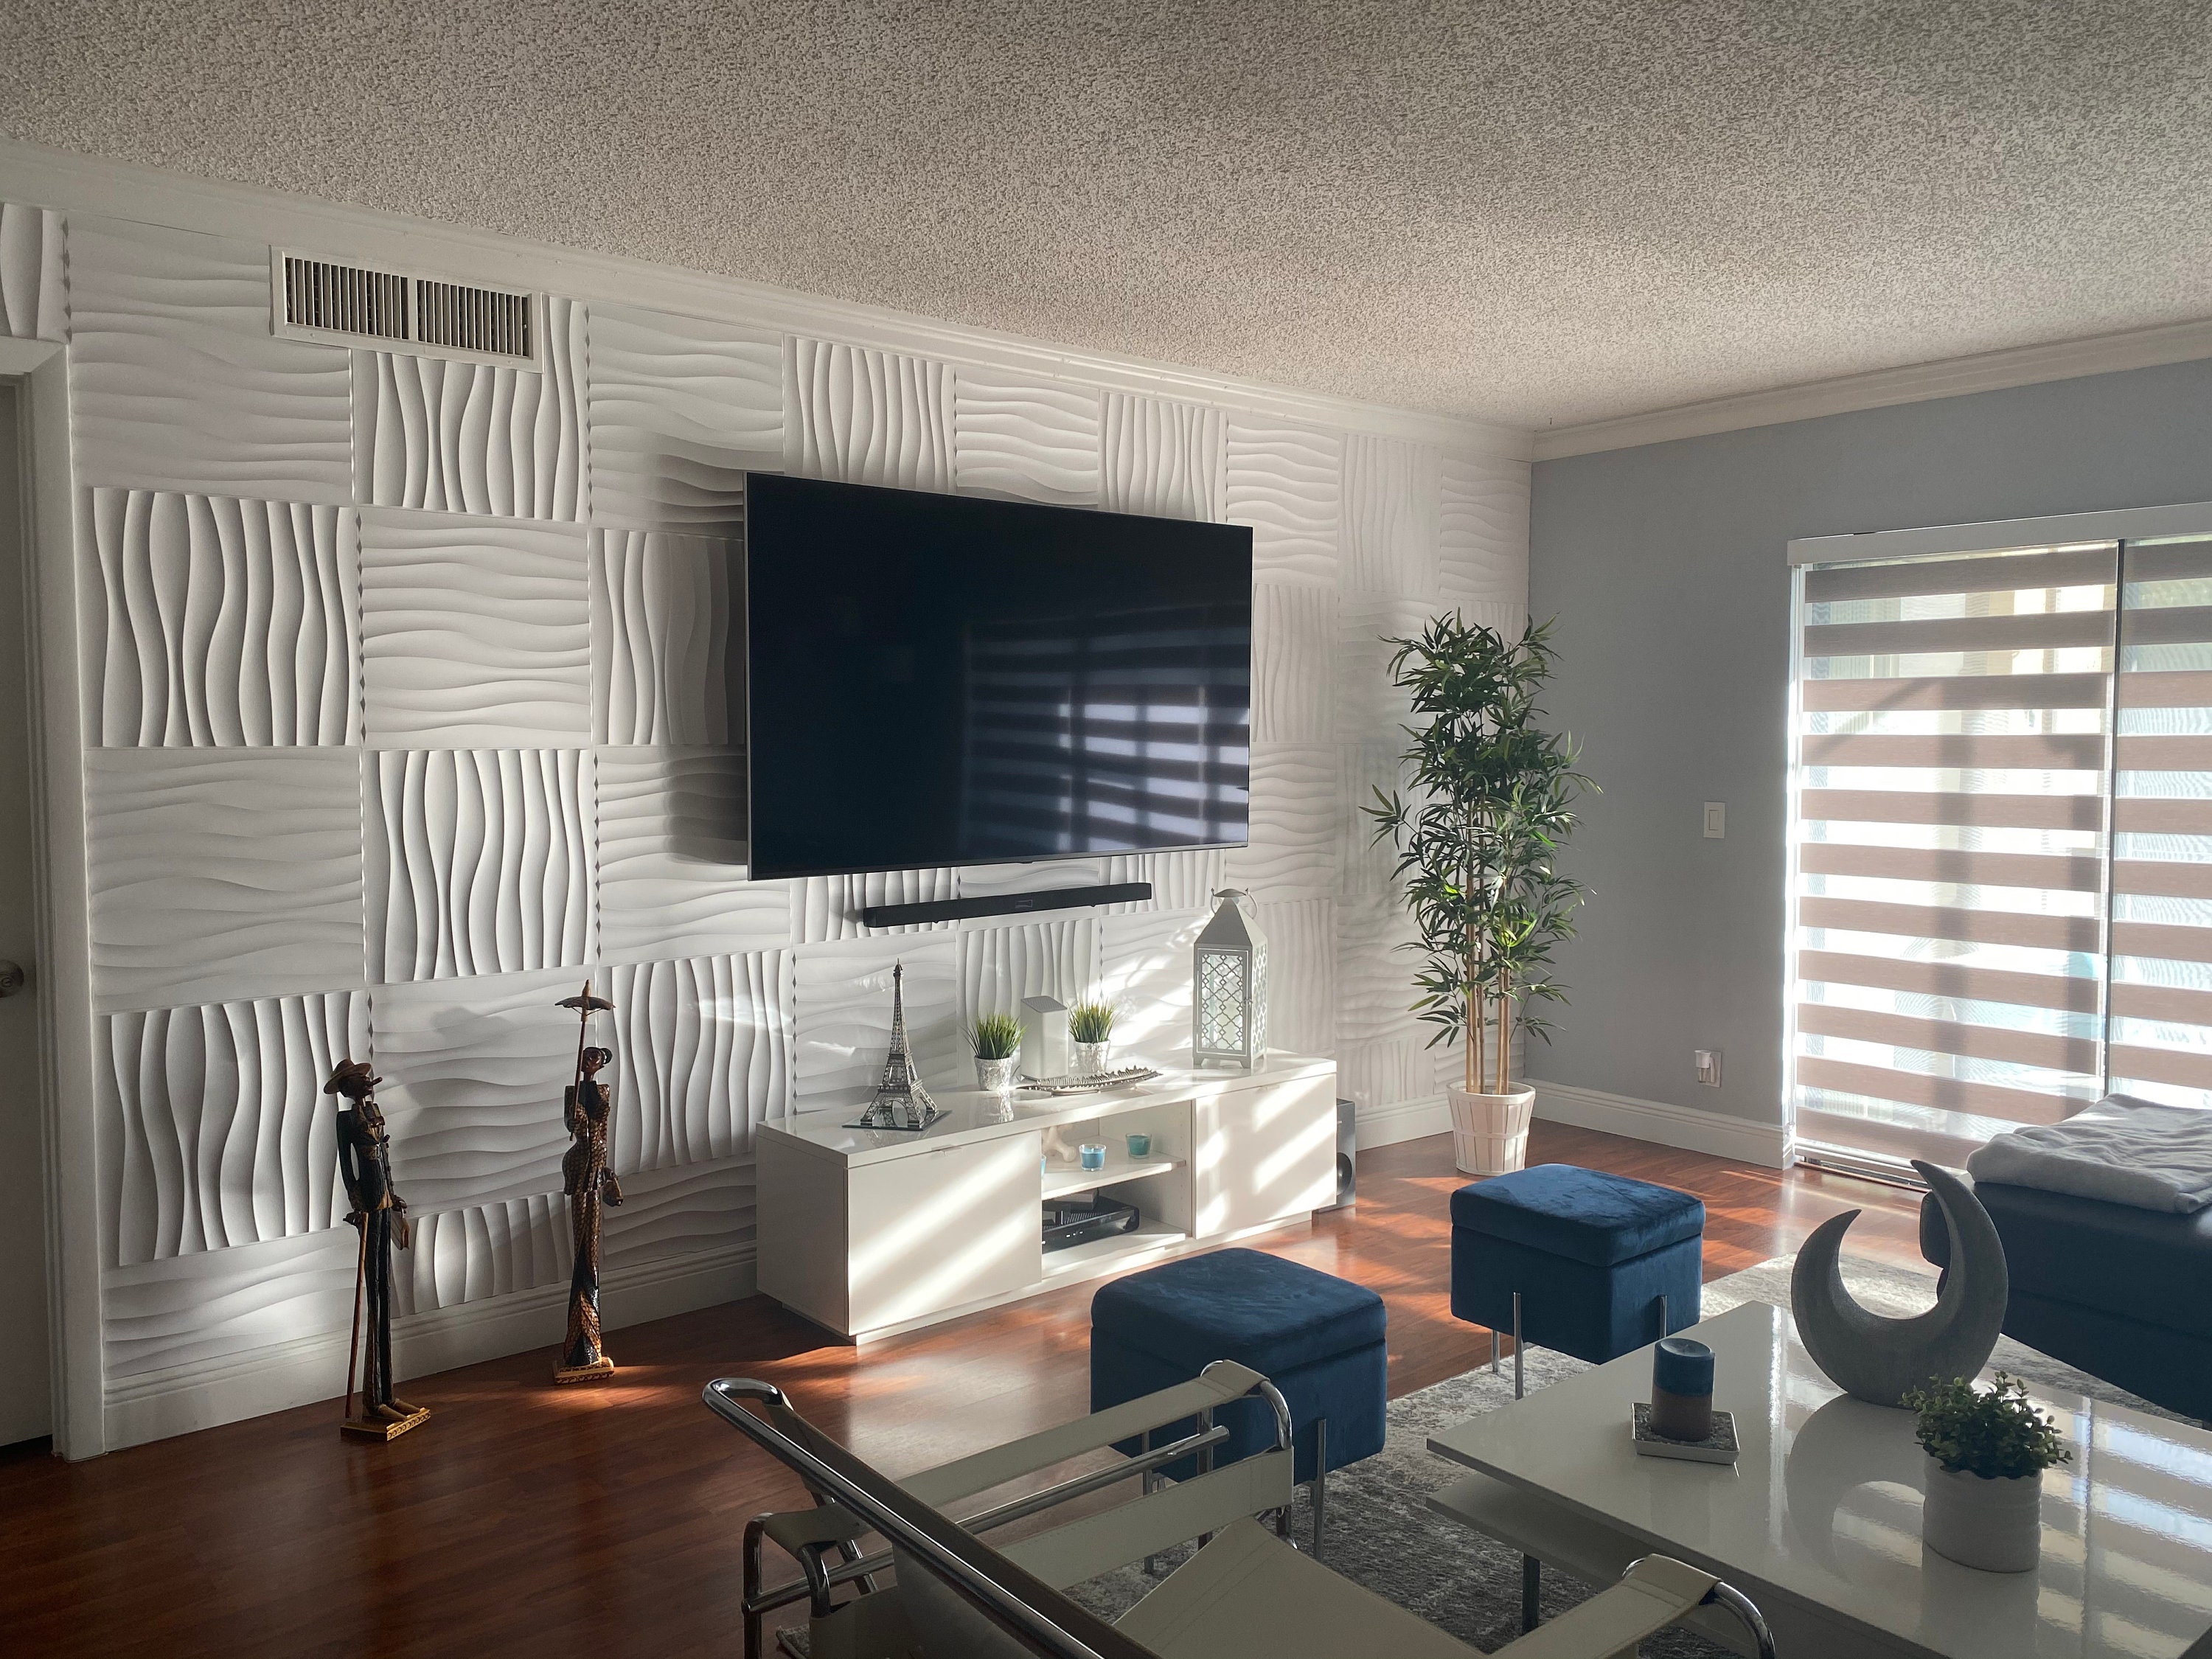 Art3d Panel 3D de PVC para decoración de paredes interiores, azulejos  texturizados ondulados, paquete de 12 unidades de 19.7 x 19.7 pulgadas,  color